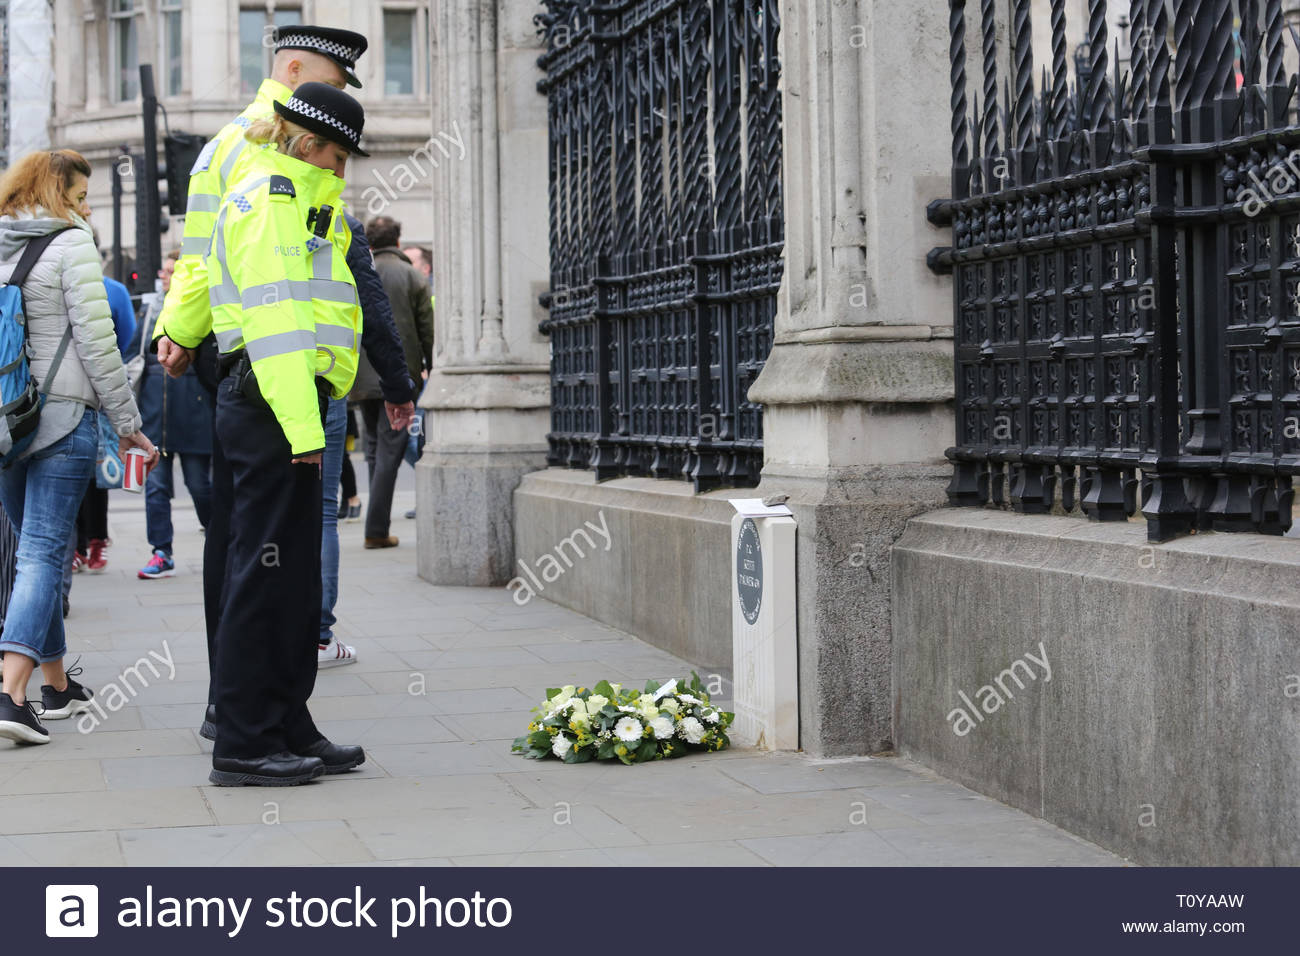 Londres, Royaume-Uni. Mar 22, 2019. Les agents de police de faire une pause à la mémoire de PC Keith Palmer à Westminster. C'est aujourd'hui le deuxième anniversaire de sa mort survenue au cours de l'attaque sur le pont de Londres et de fleurs fraîches ont été placés là. Crédit : la double couche/Alamy Live News Banque D'Images